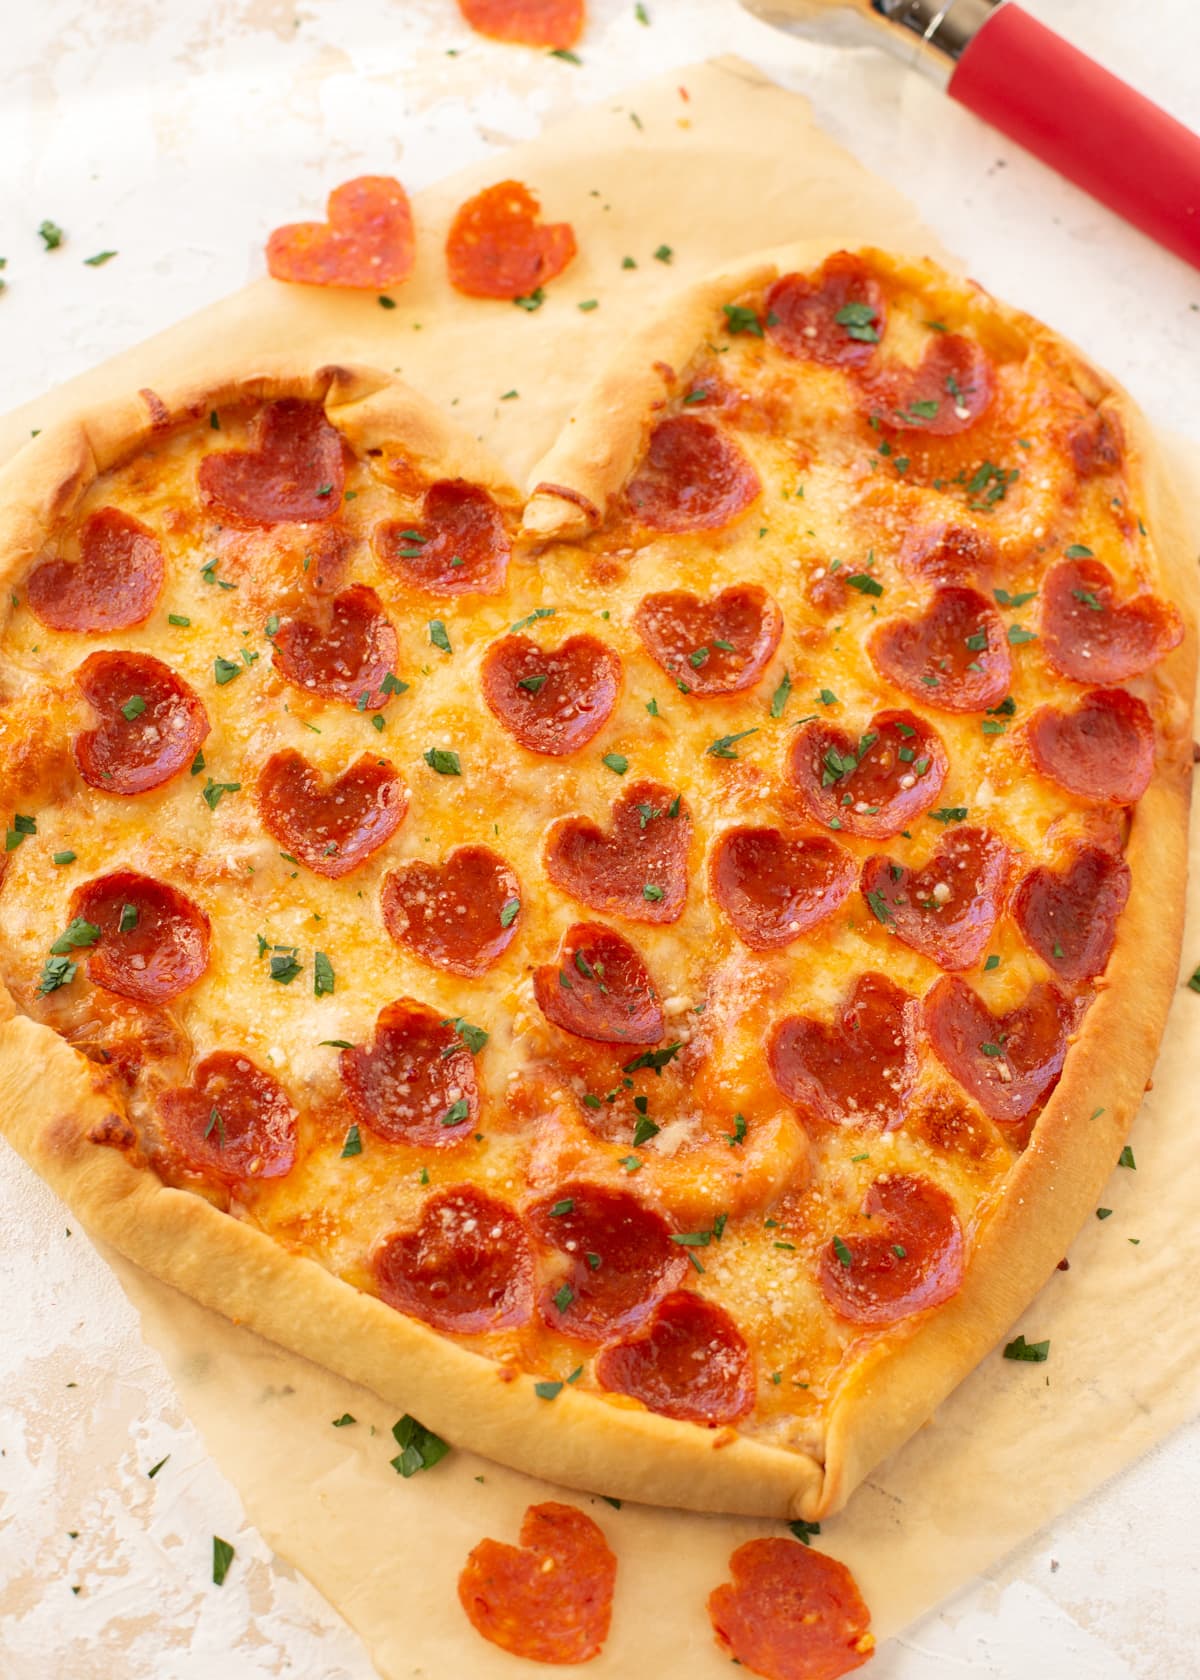 Heart Shaped Pizza Recipe